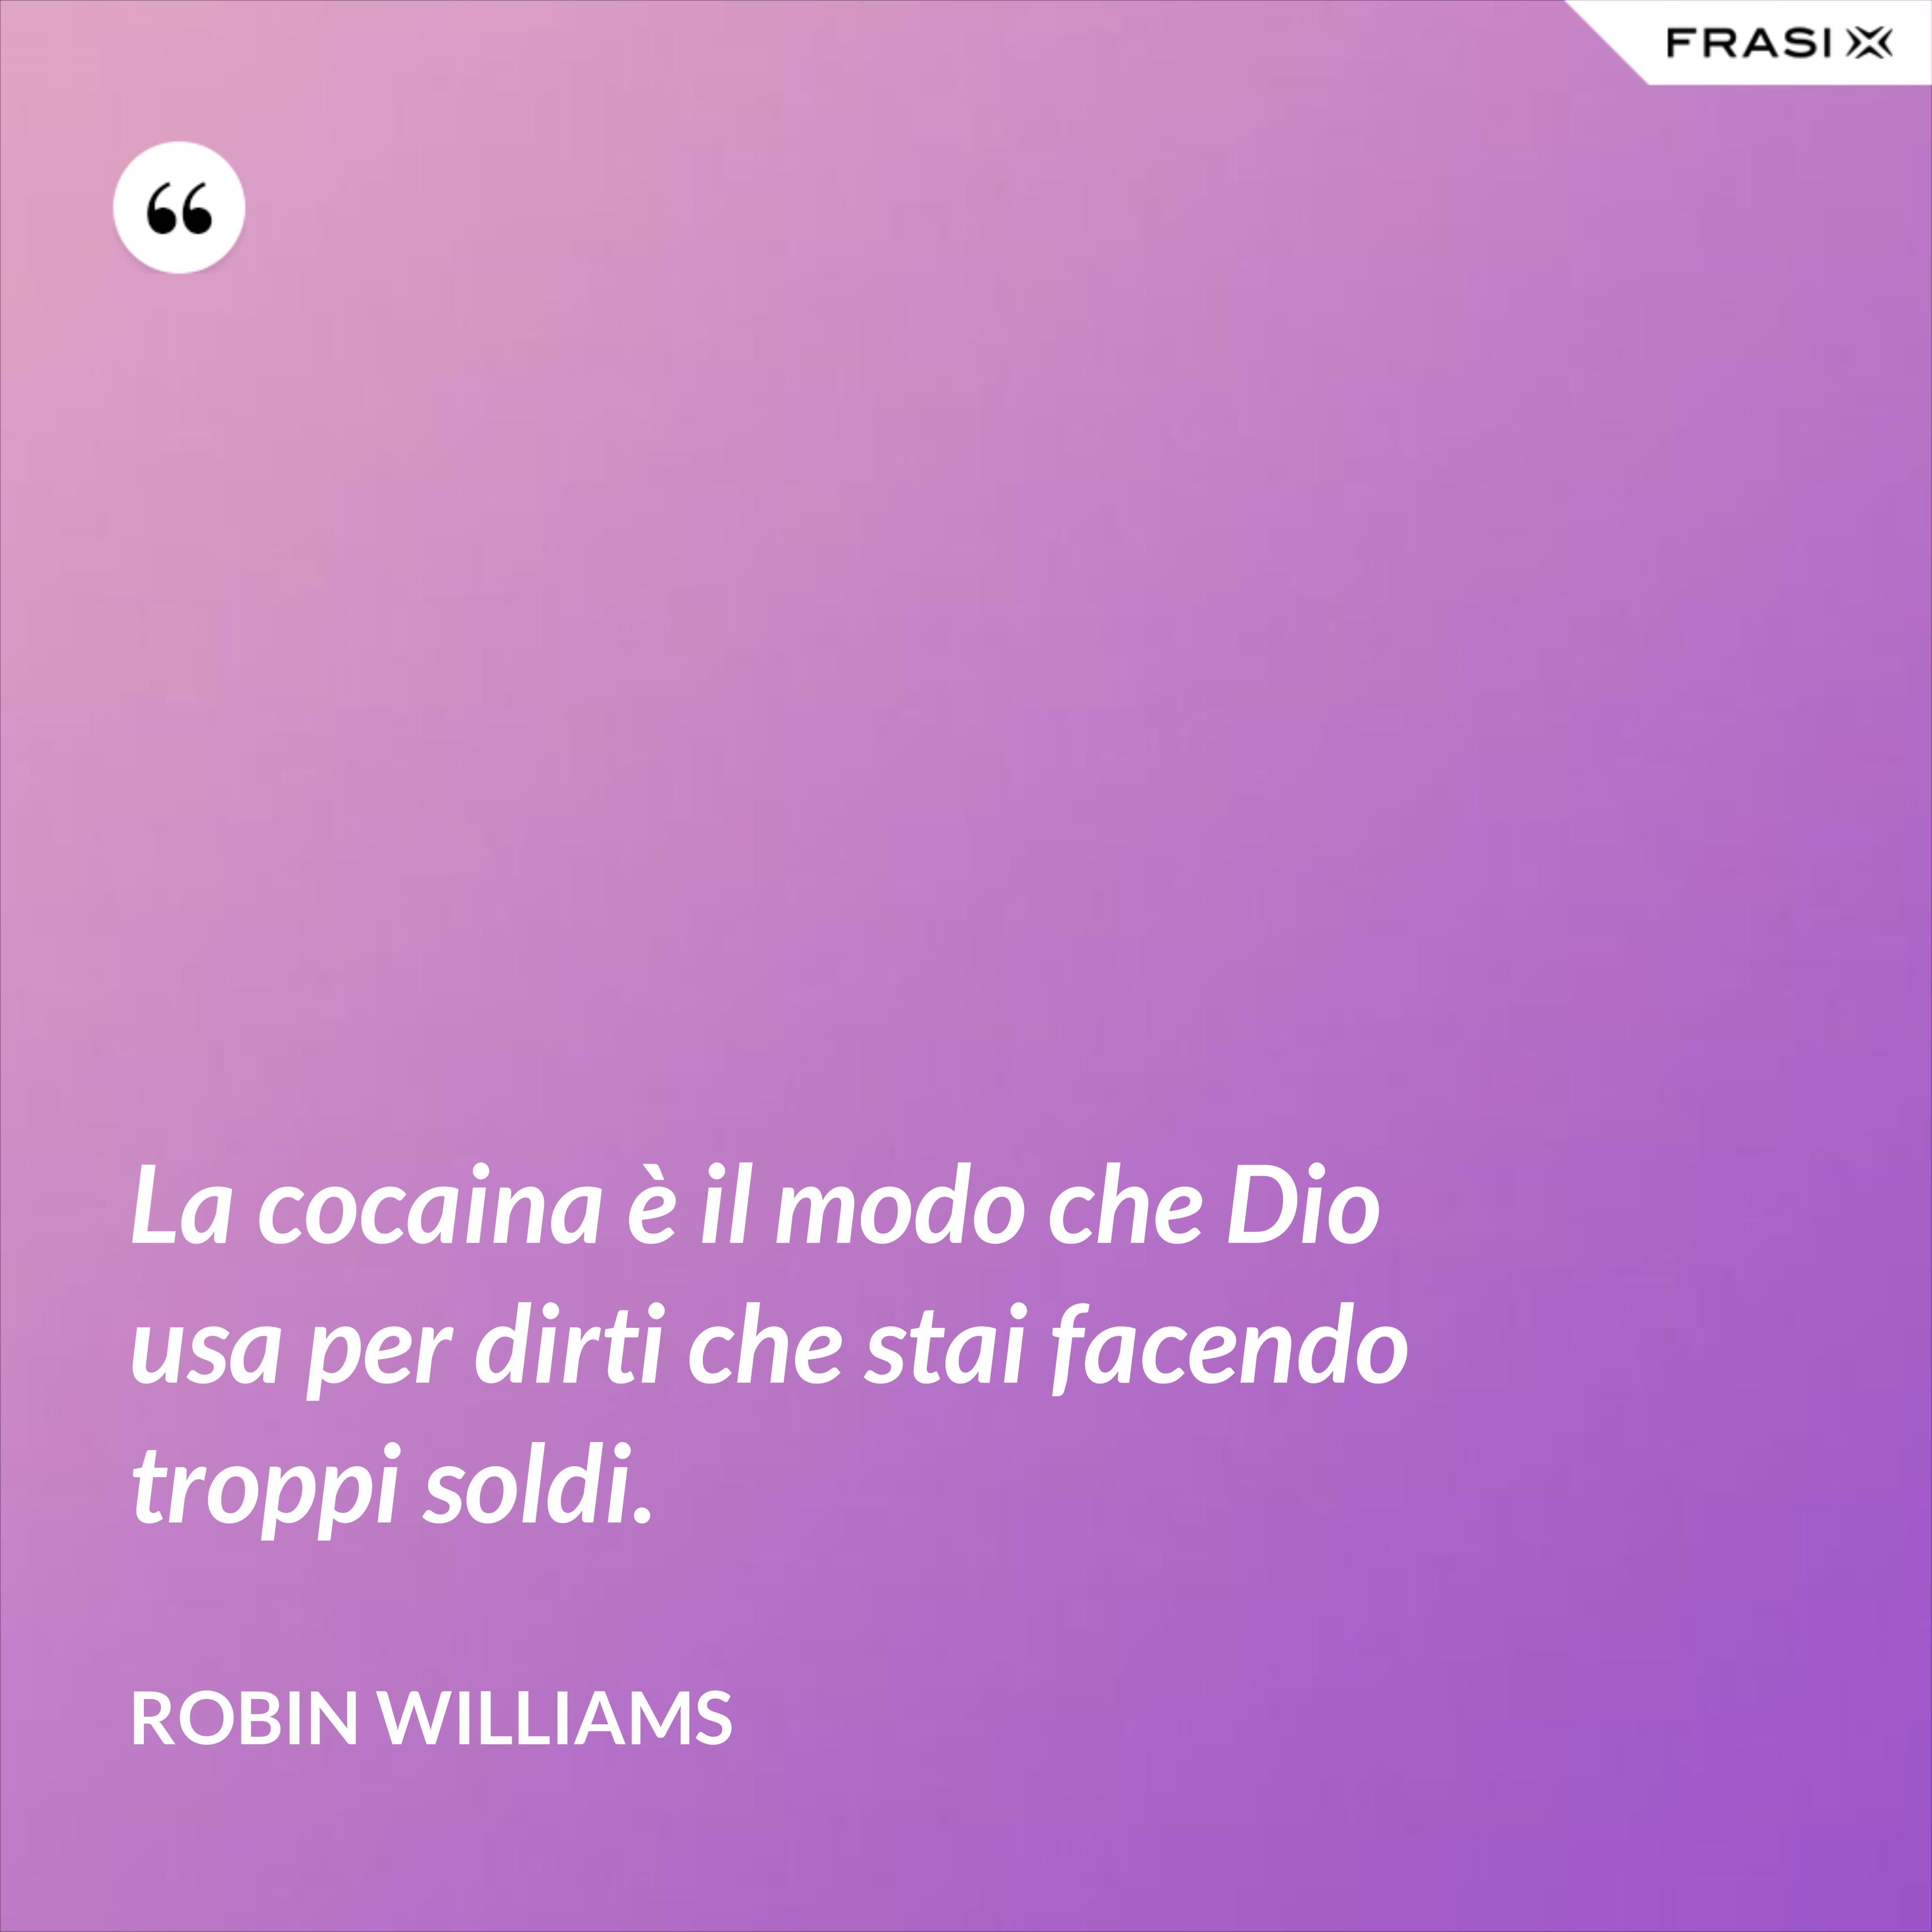 La cocaina è il modo che Dio usa per dirti che stai facendo troppi soldi. - Robin Williams